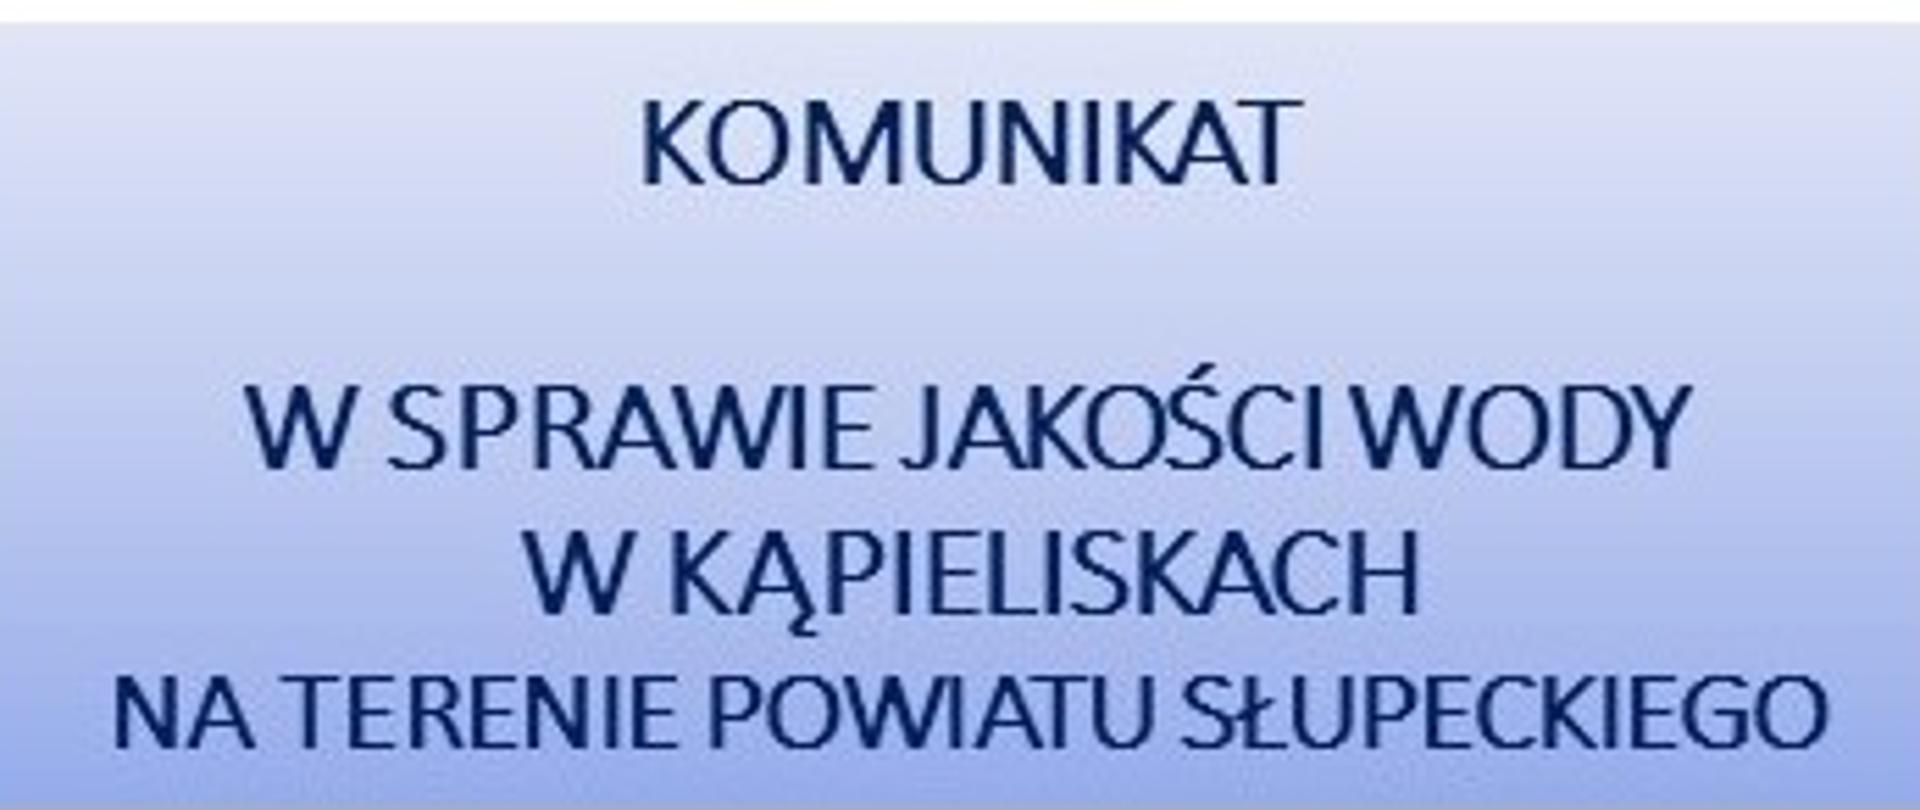 Komunikat w sprawie jakości wody w kąpieliskach na terenie powiatu słupeckiego